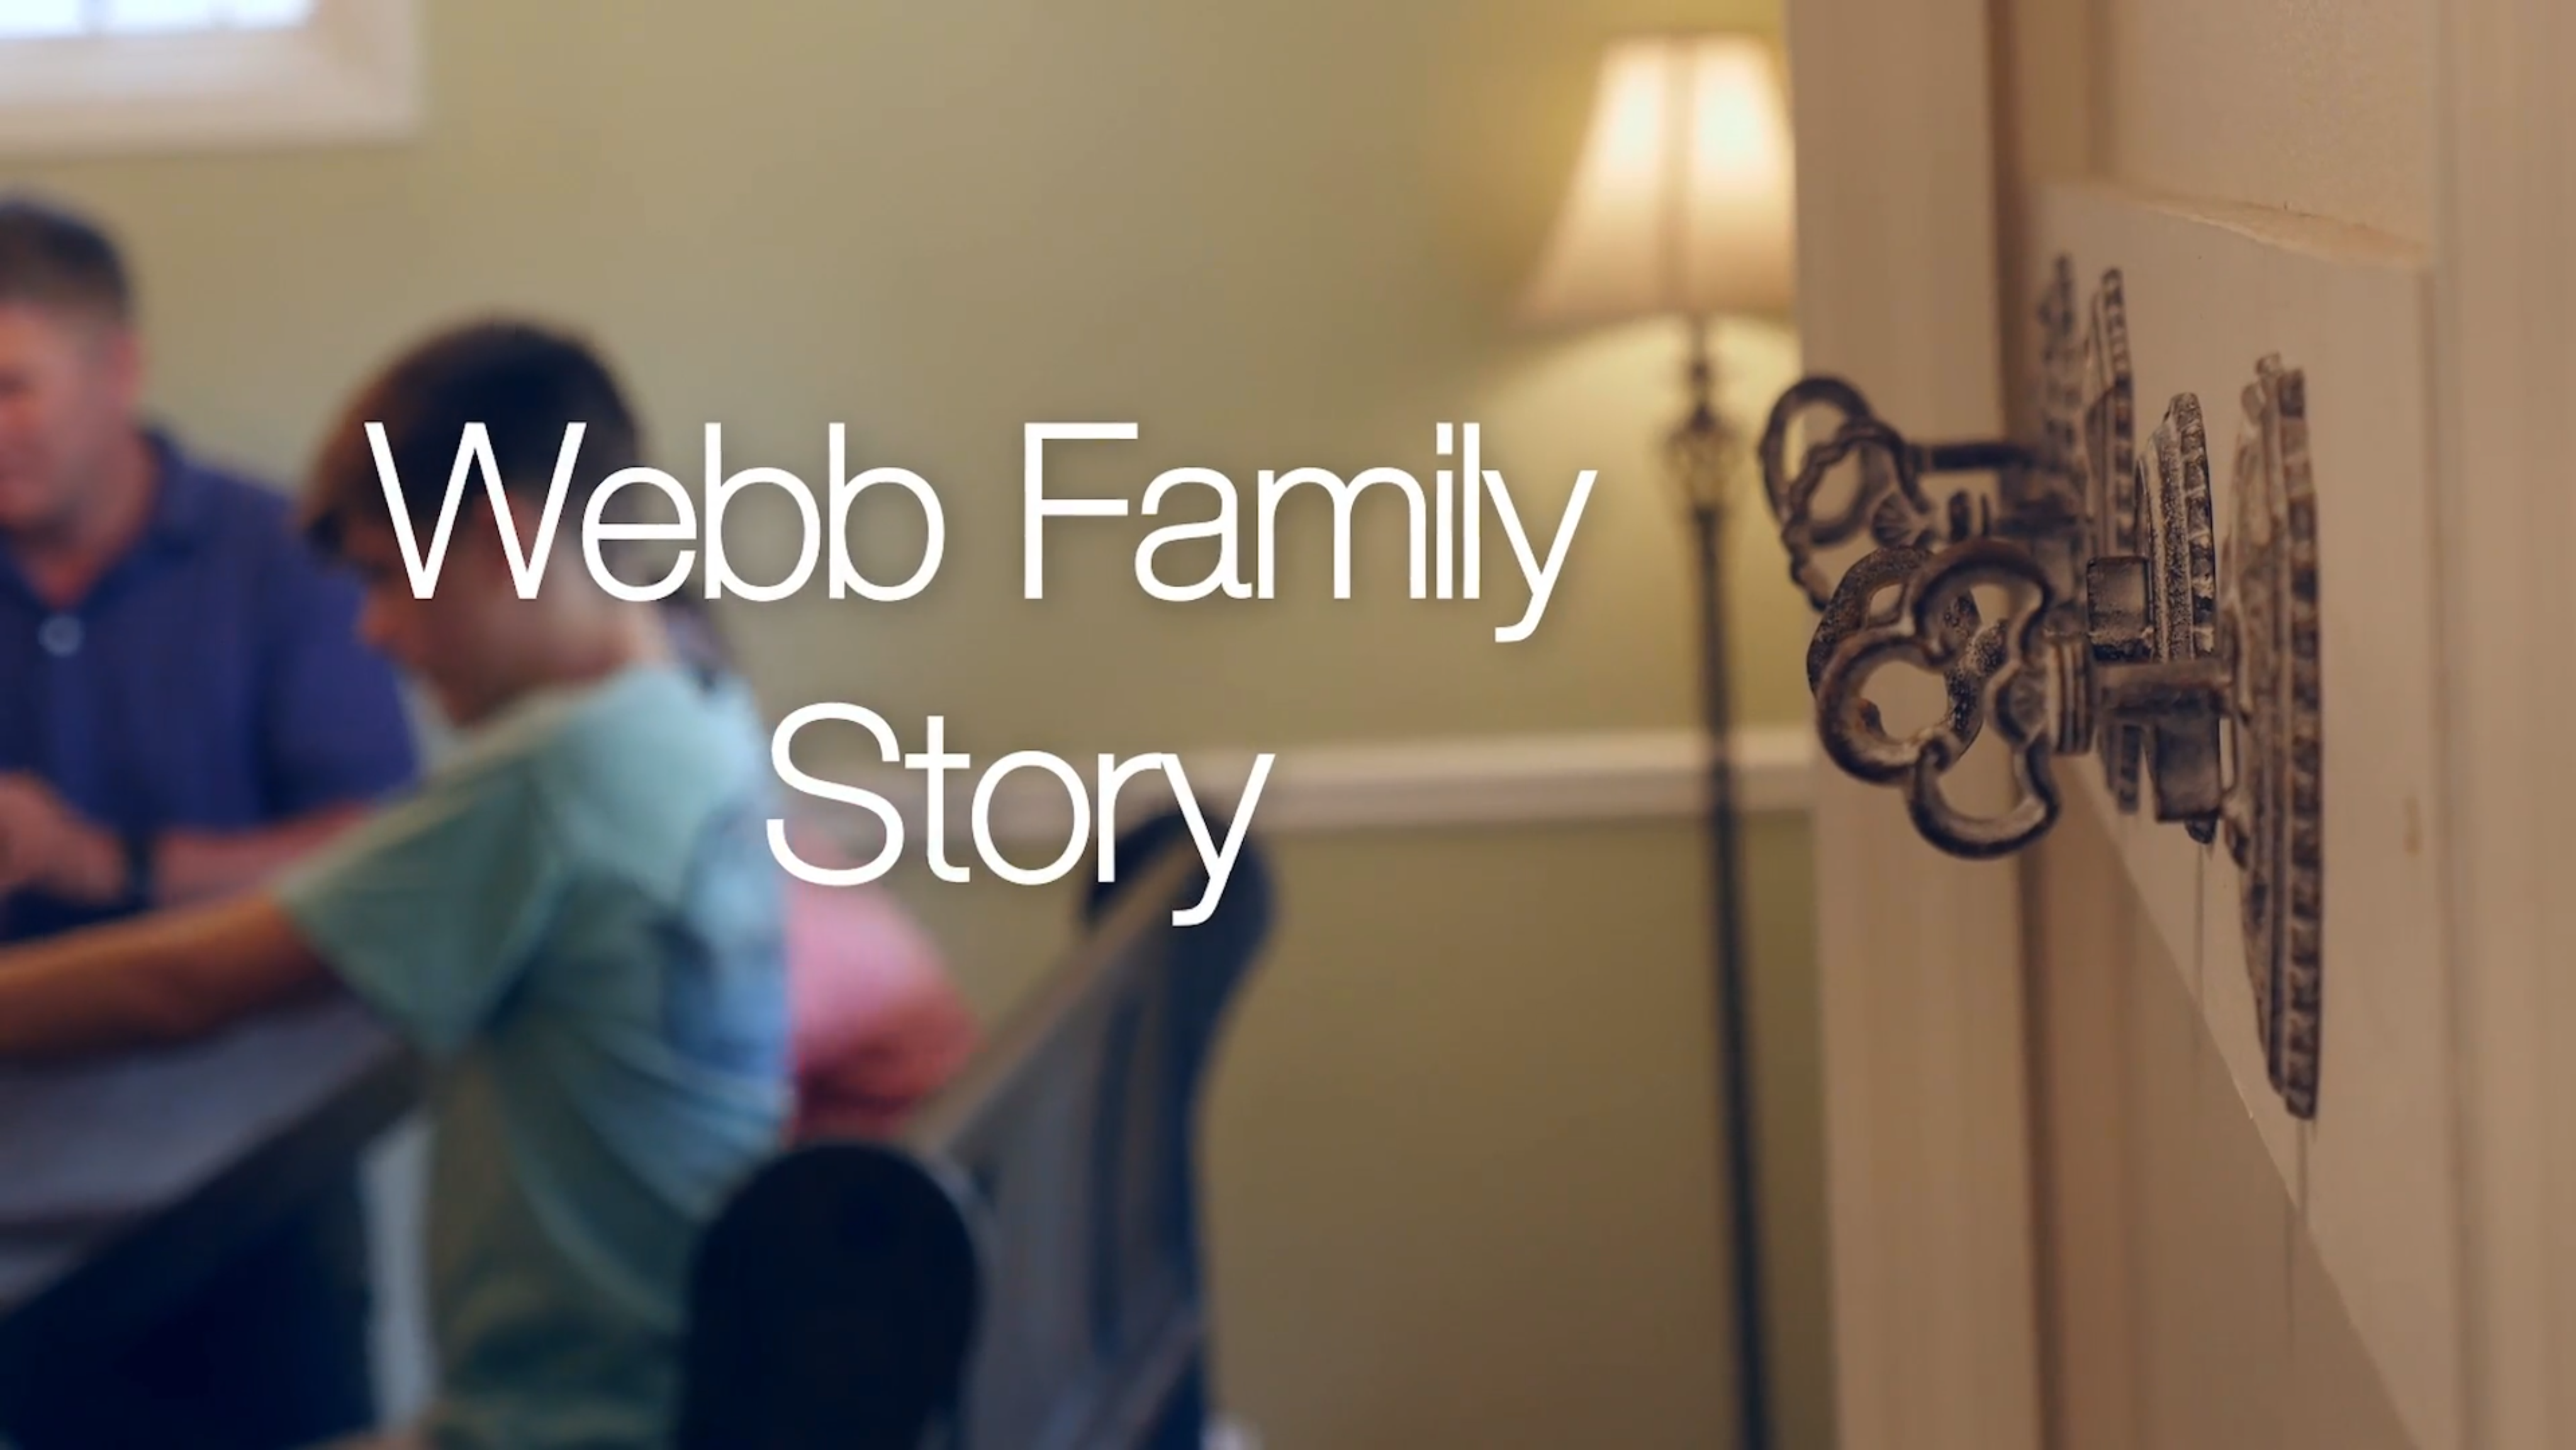 The Webb Family Story